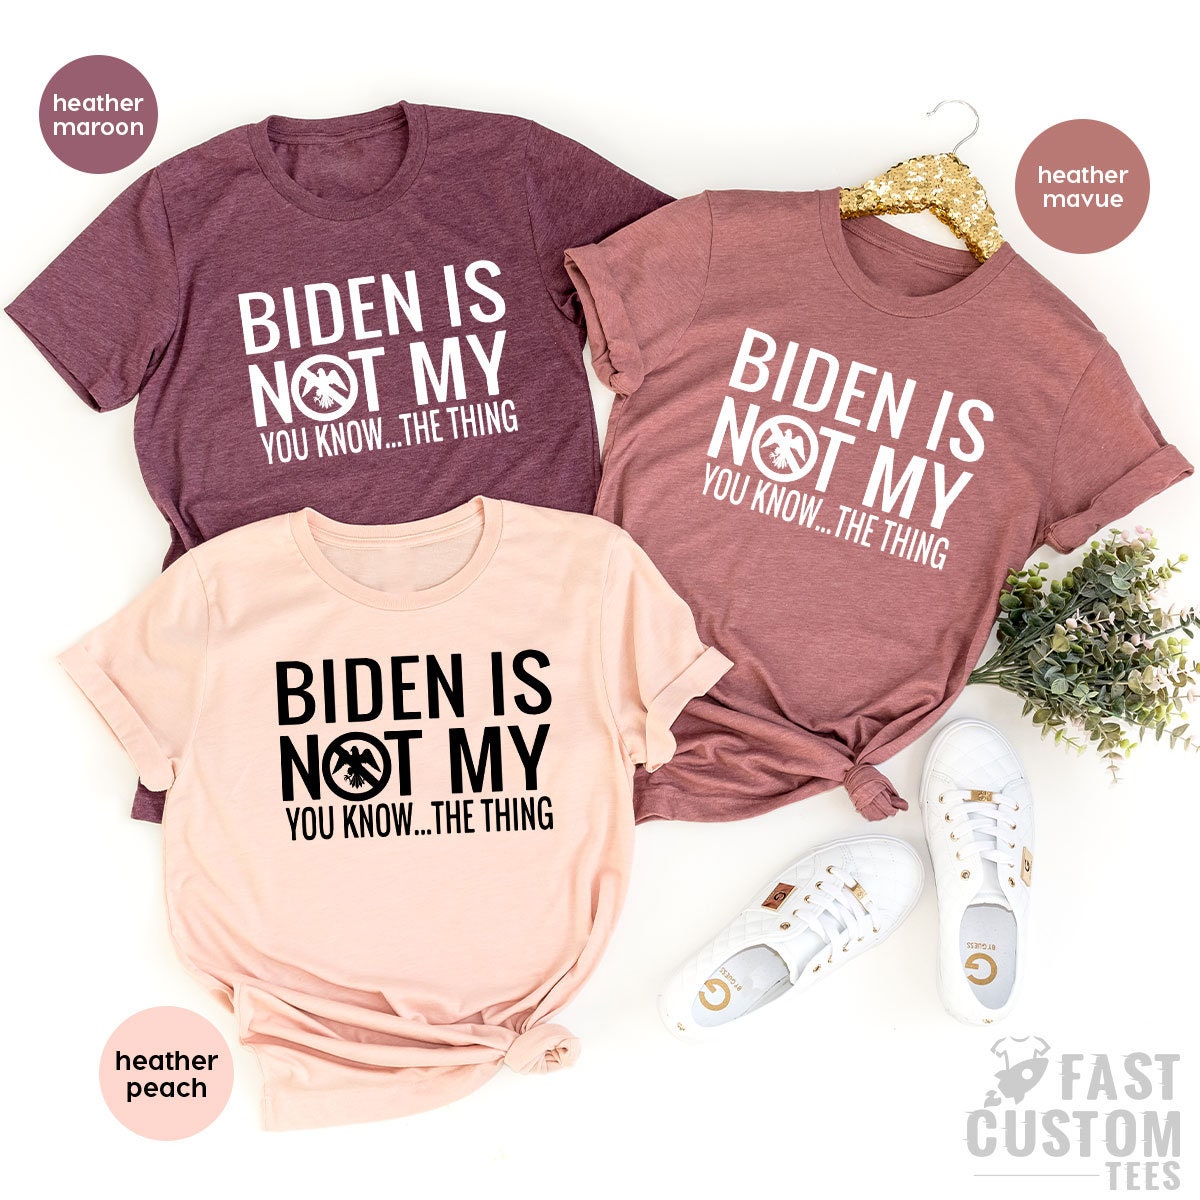 Trump Shirt, Funny Republican Shirt, Biden Is Not My Shirt, Anti Biden Shirt, Political Shirt, Anti Democrat Shirt, Anti Joe Biden Shirt - Fastdeliverytees.com